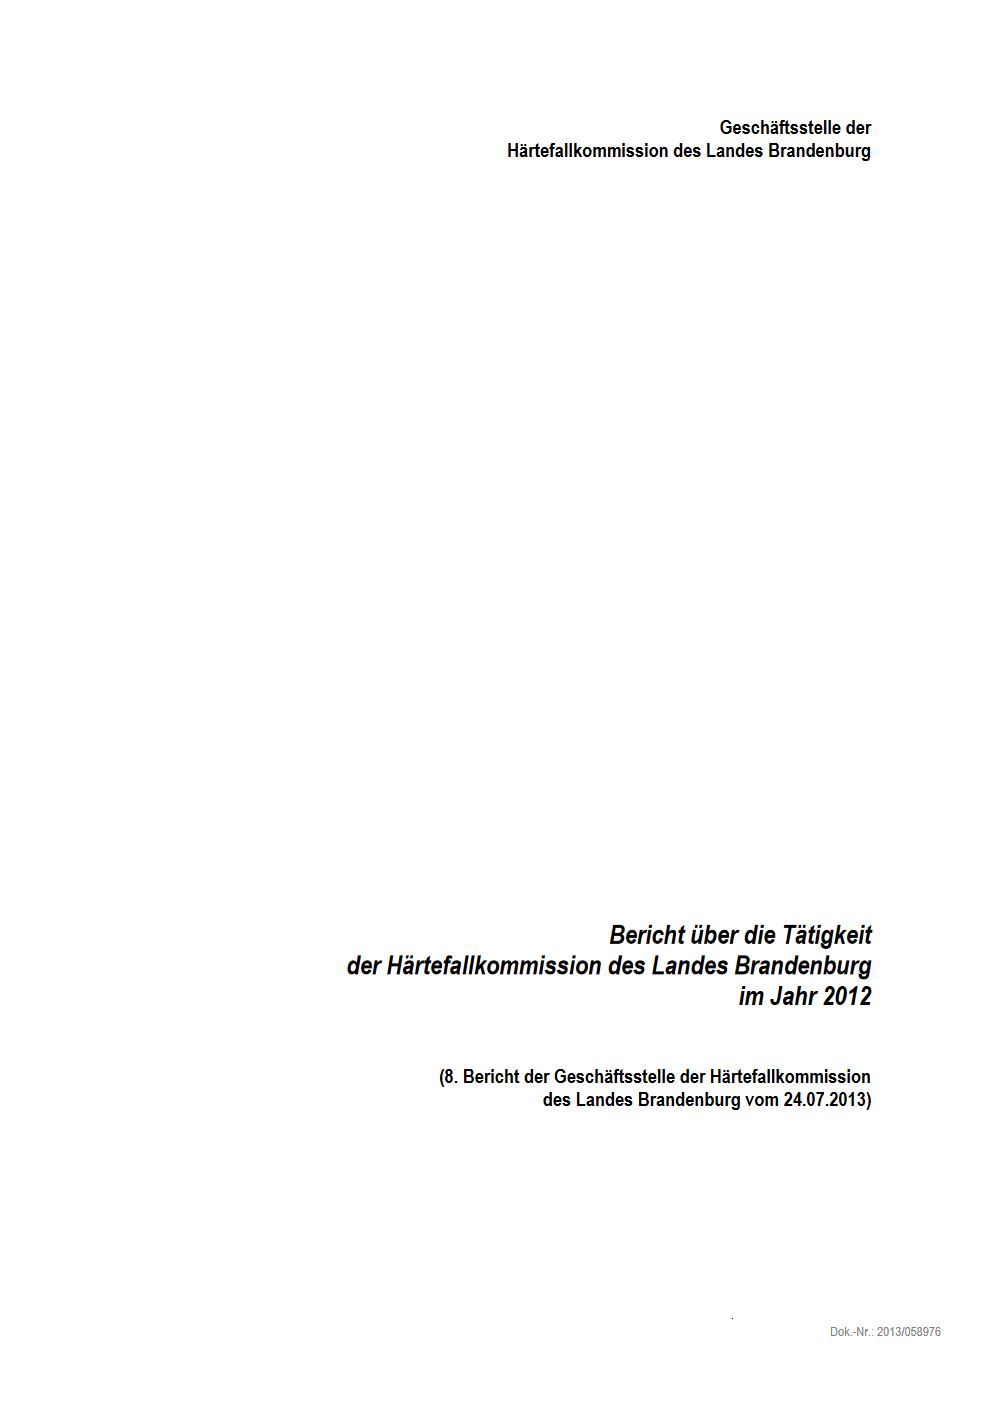 Bild vergrößern (Bild: Vorschau Tätigkeitsbericht Härtefallkommission 2012)